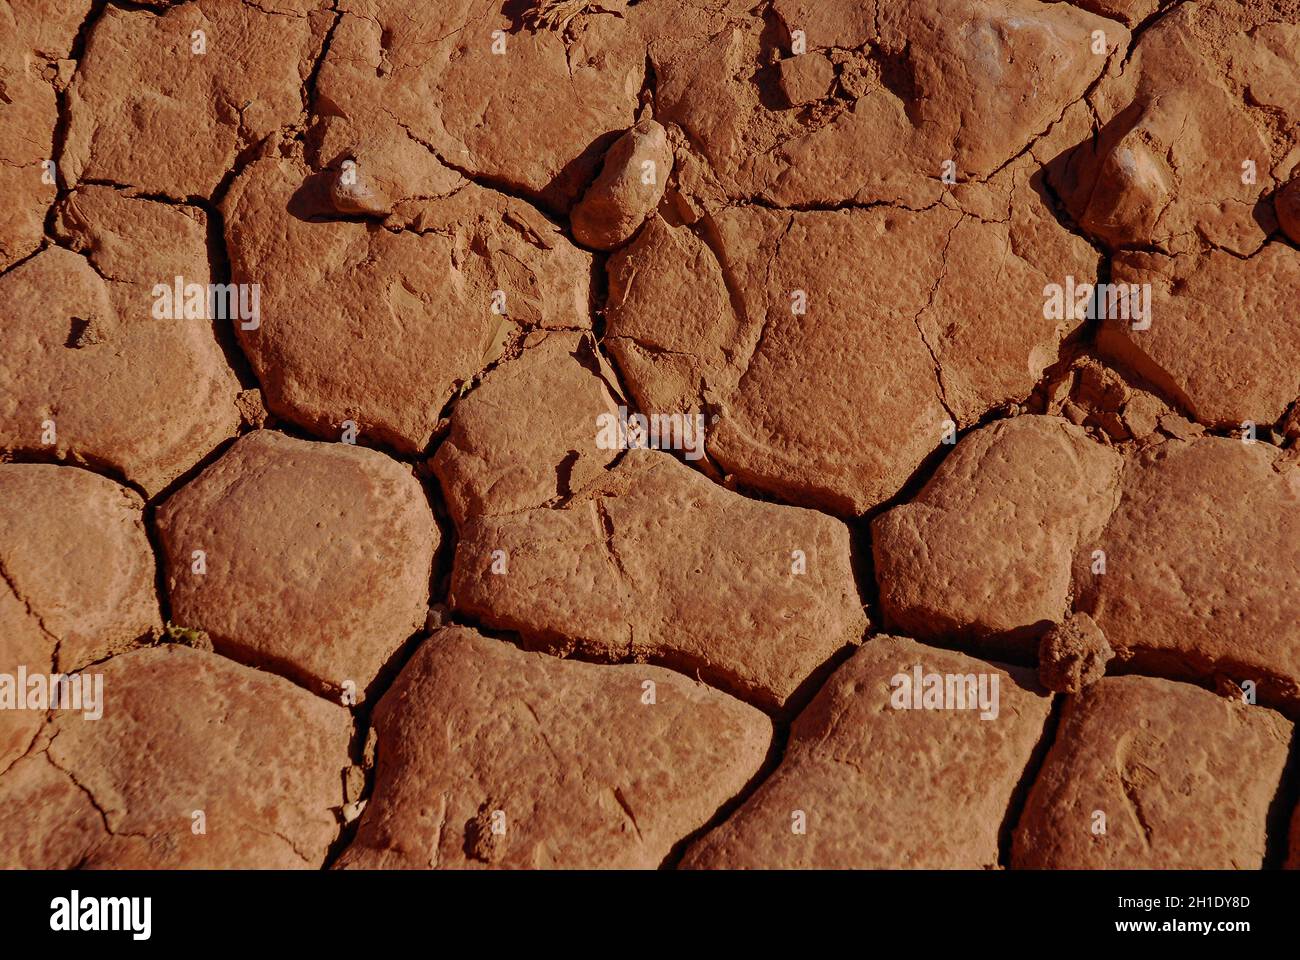 Arid soil of the Atacama Desert, Chile Stock Photo